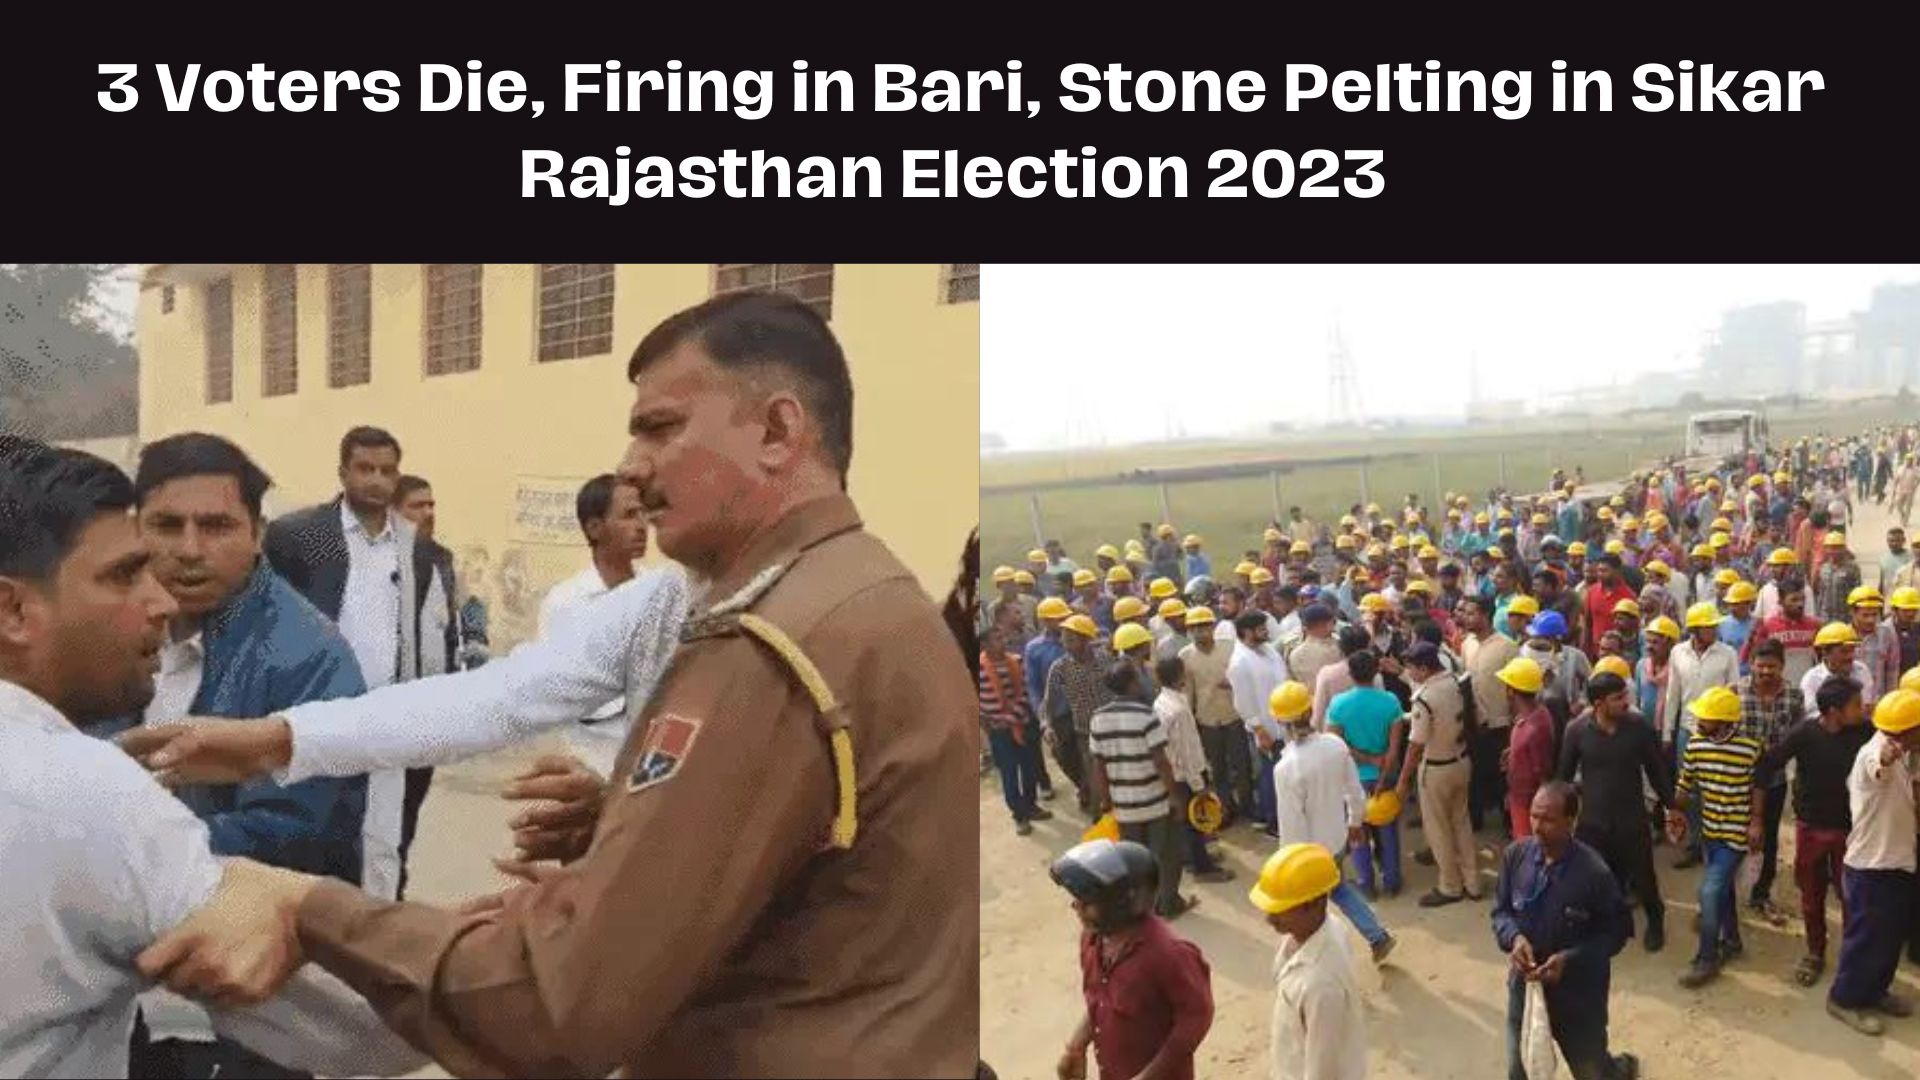 Rajasthan Election 2023: 3 Voters Die, Firing in Bari, Stone Pelting in Sikar